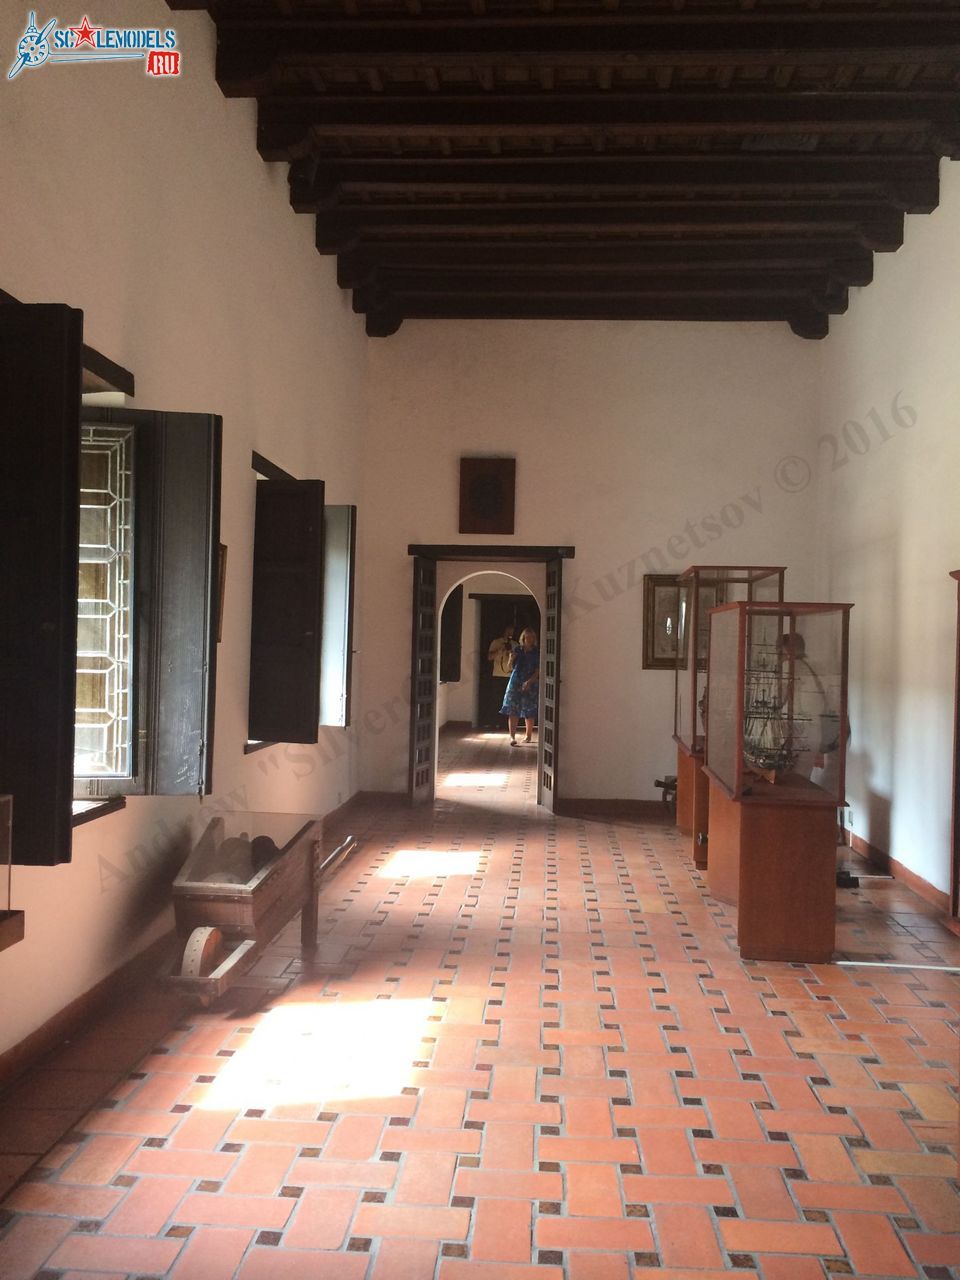 Museo_de_las_Casas_Reales_108.jpg